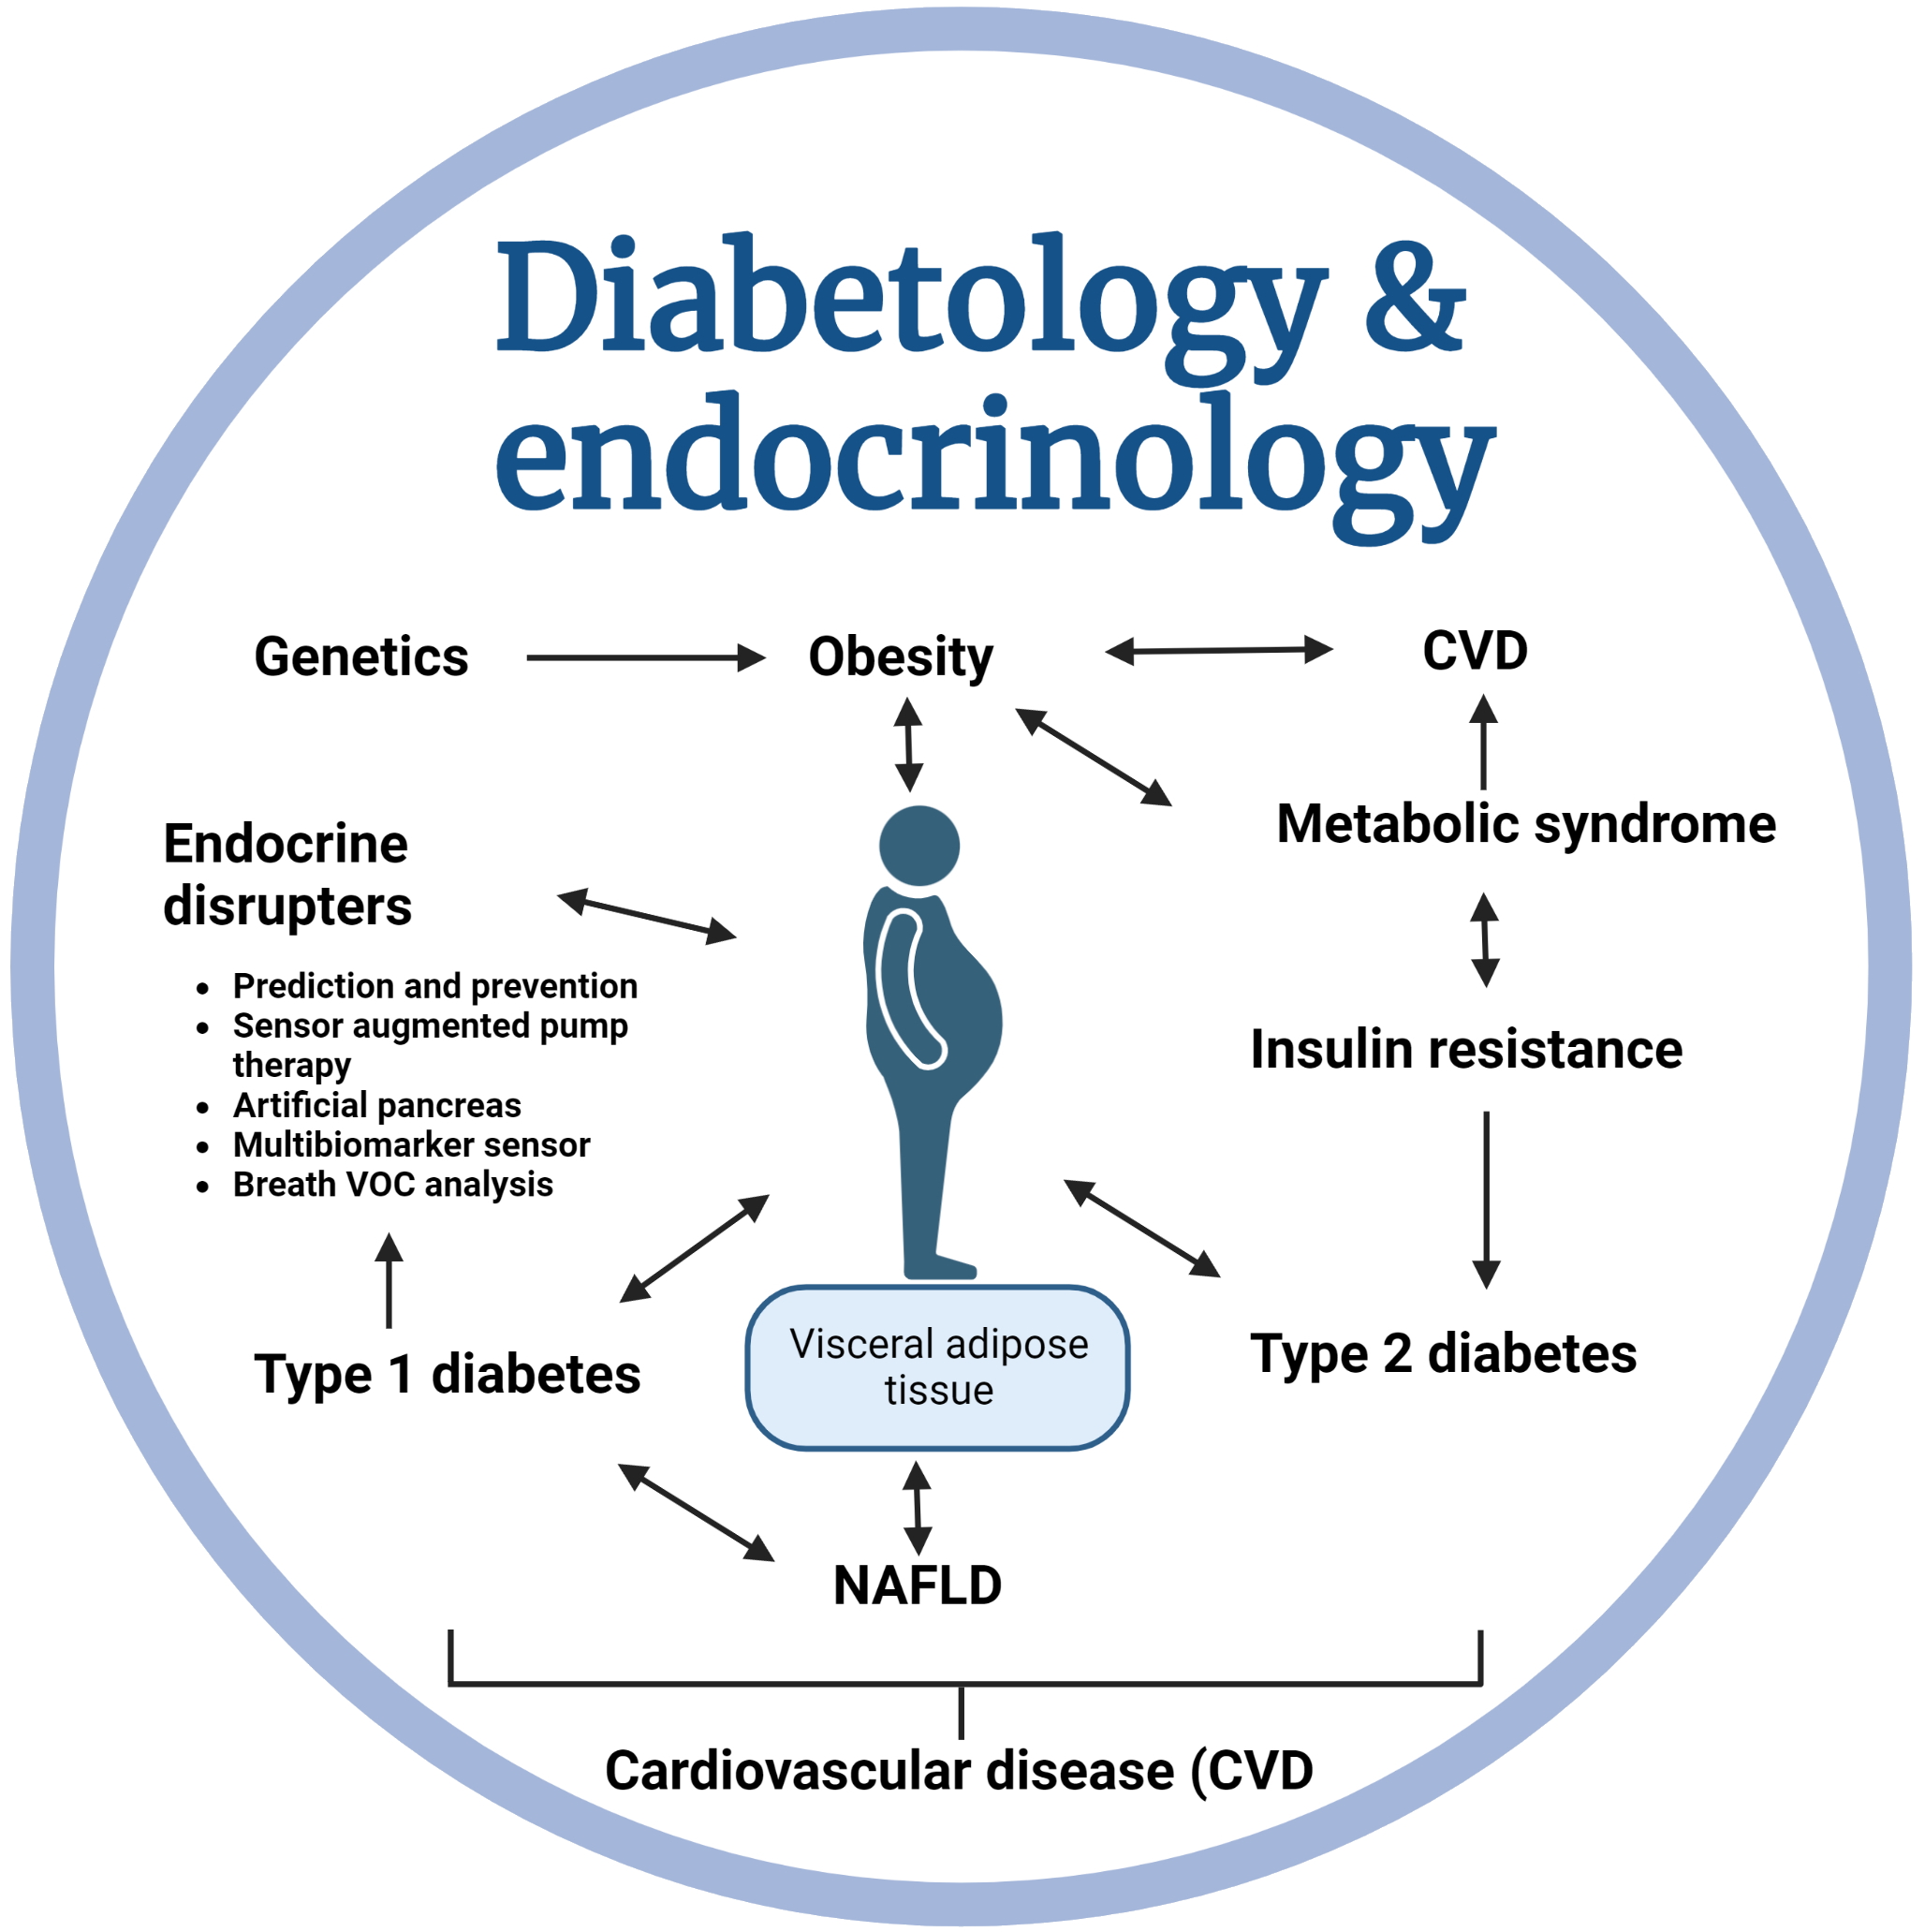 Endocrinology & Diabetology